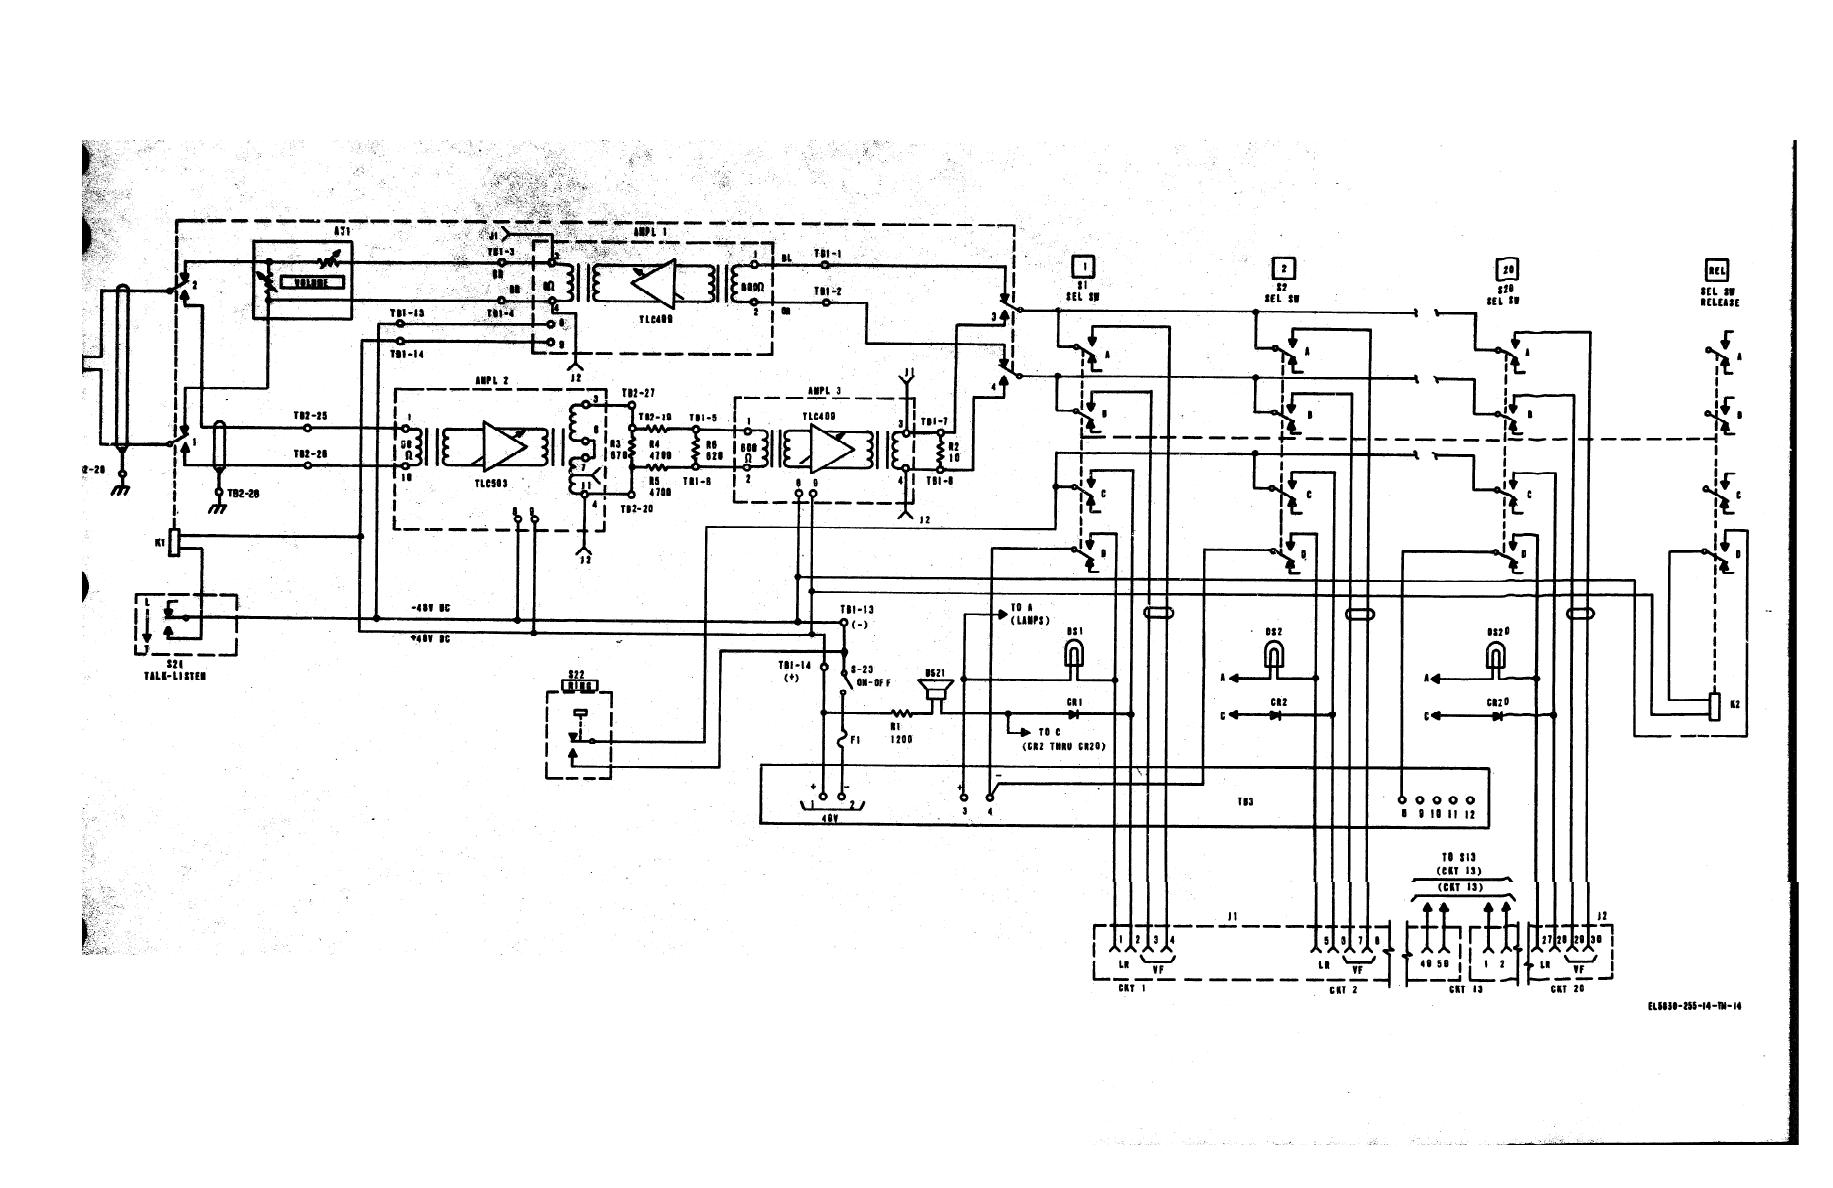 Figure F0-2. Central intercom unit, schematic diagram.